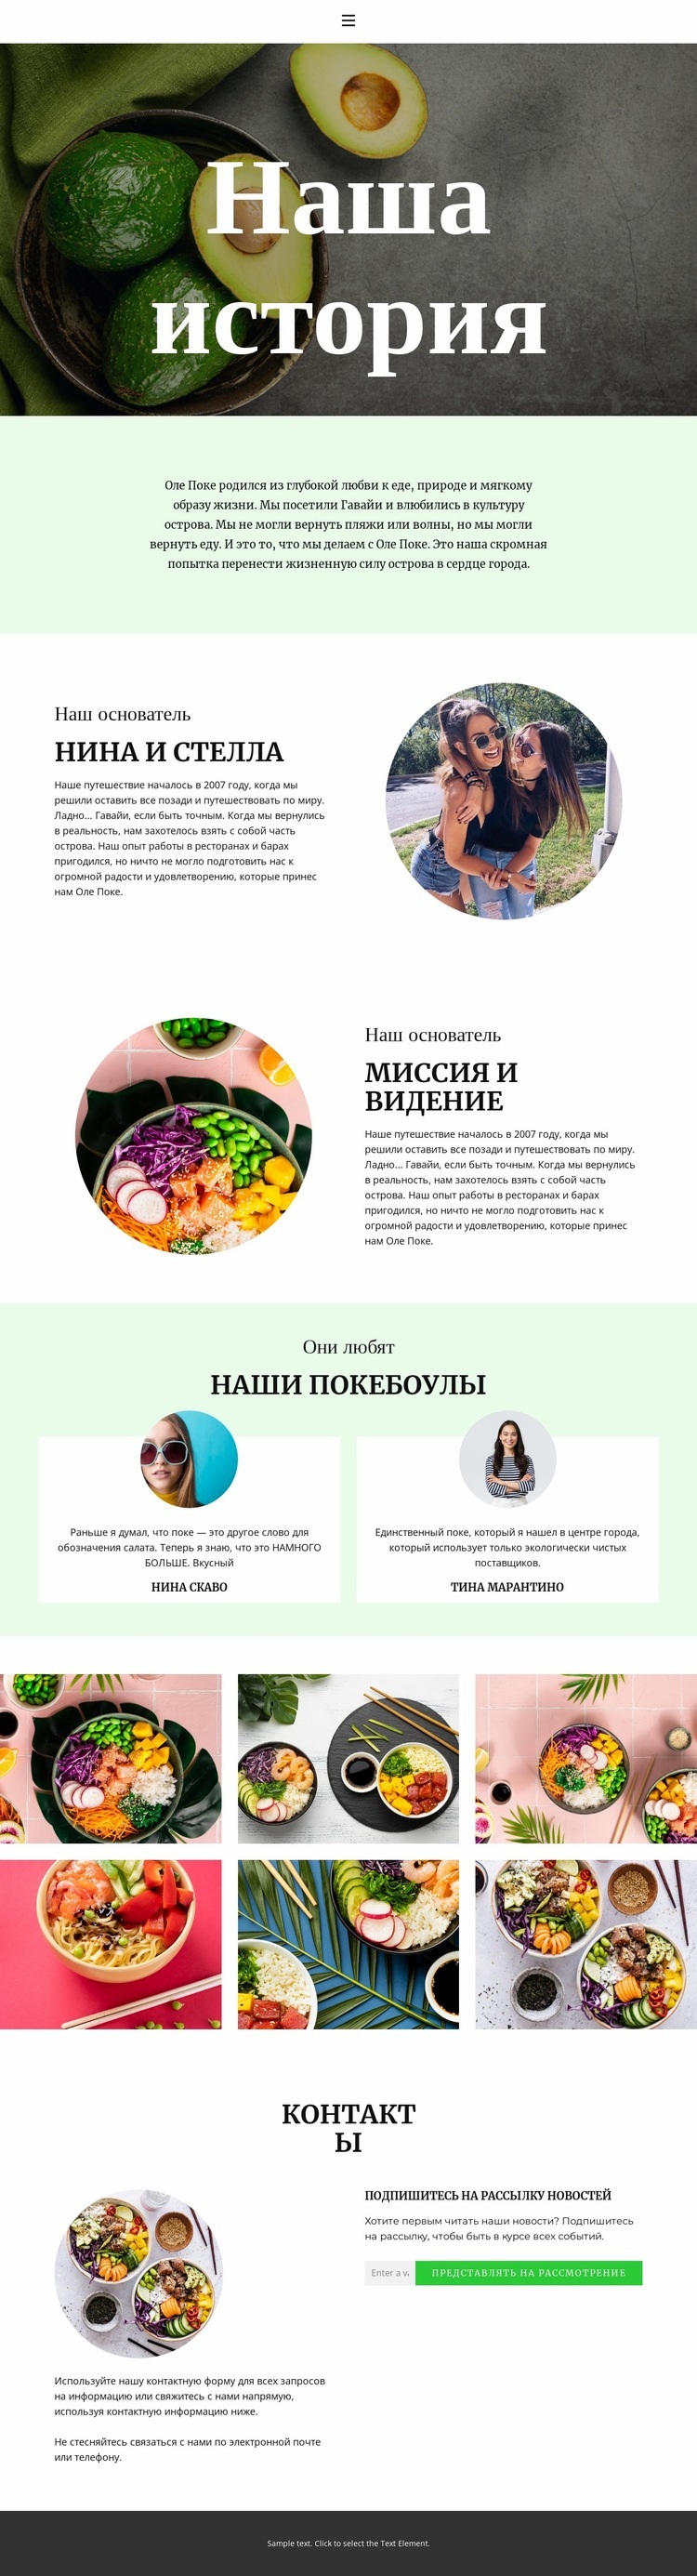 About our founder Шаблоны конструктора веб-сайтов